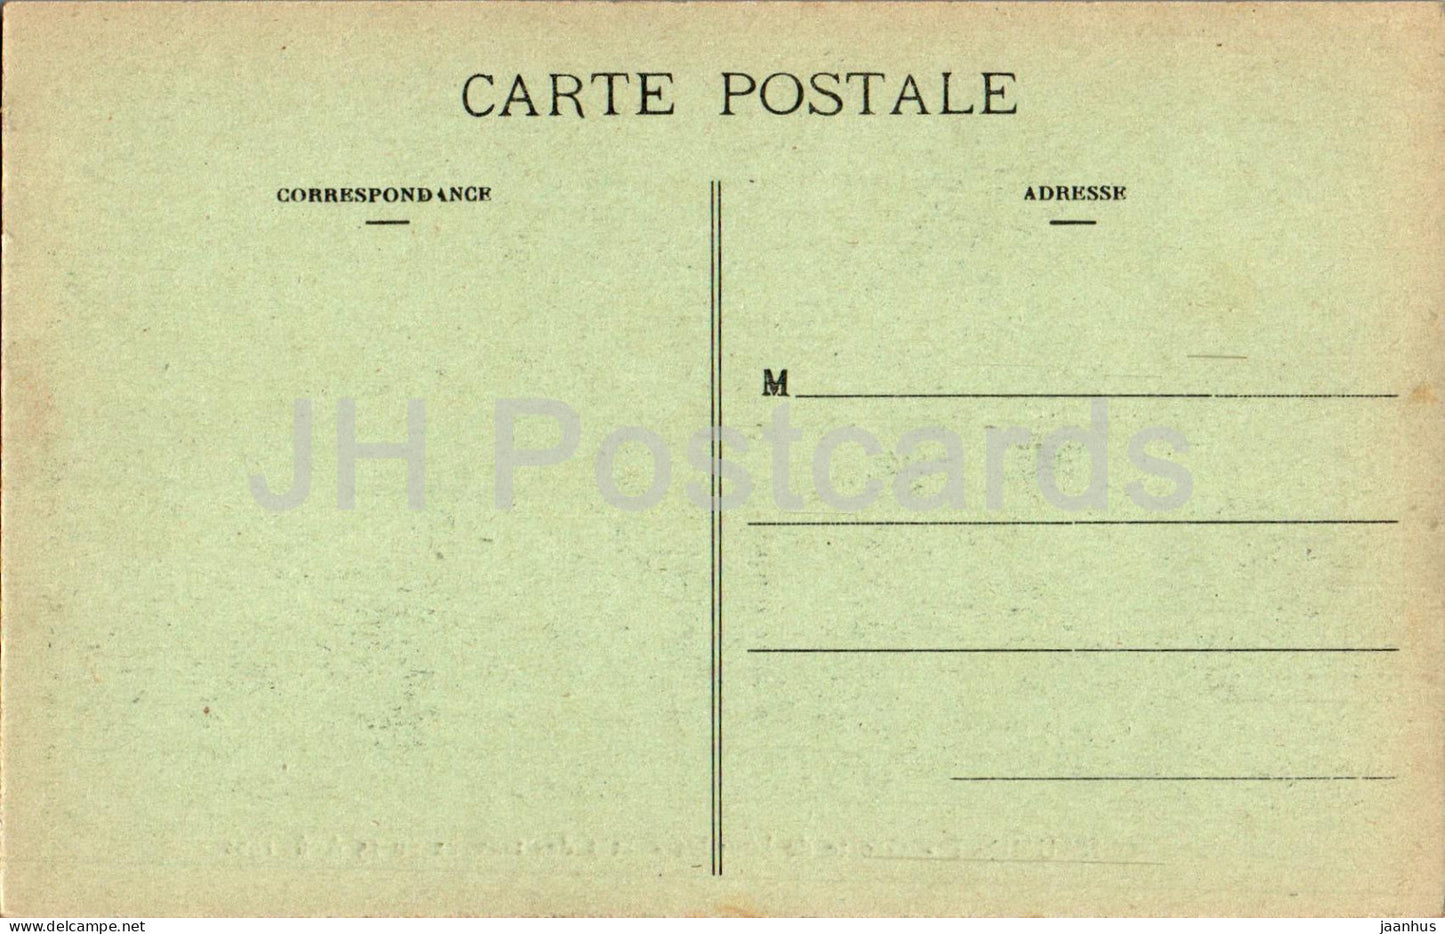 Chaumont - Grotte de Lourdes - Etat des travaux au 15 Aout 1922 - cave - old postcard - France - used